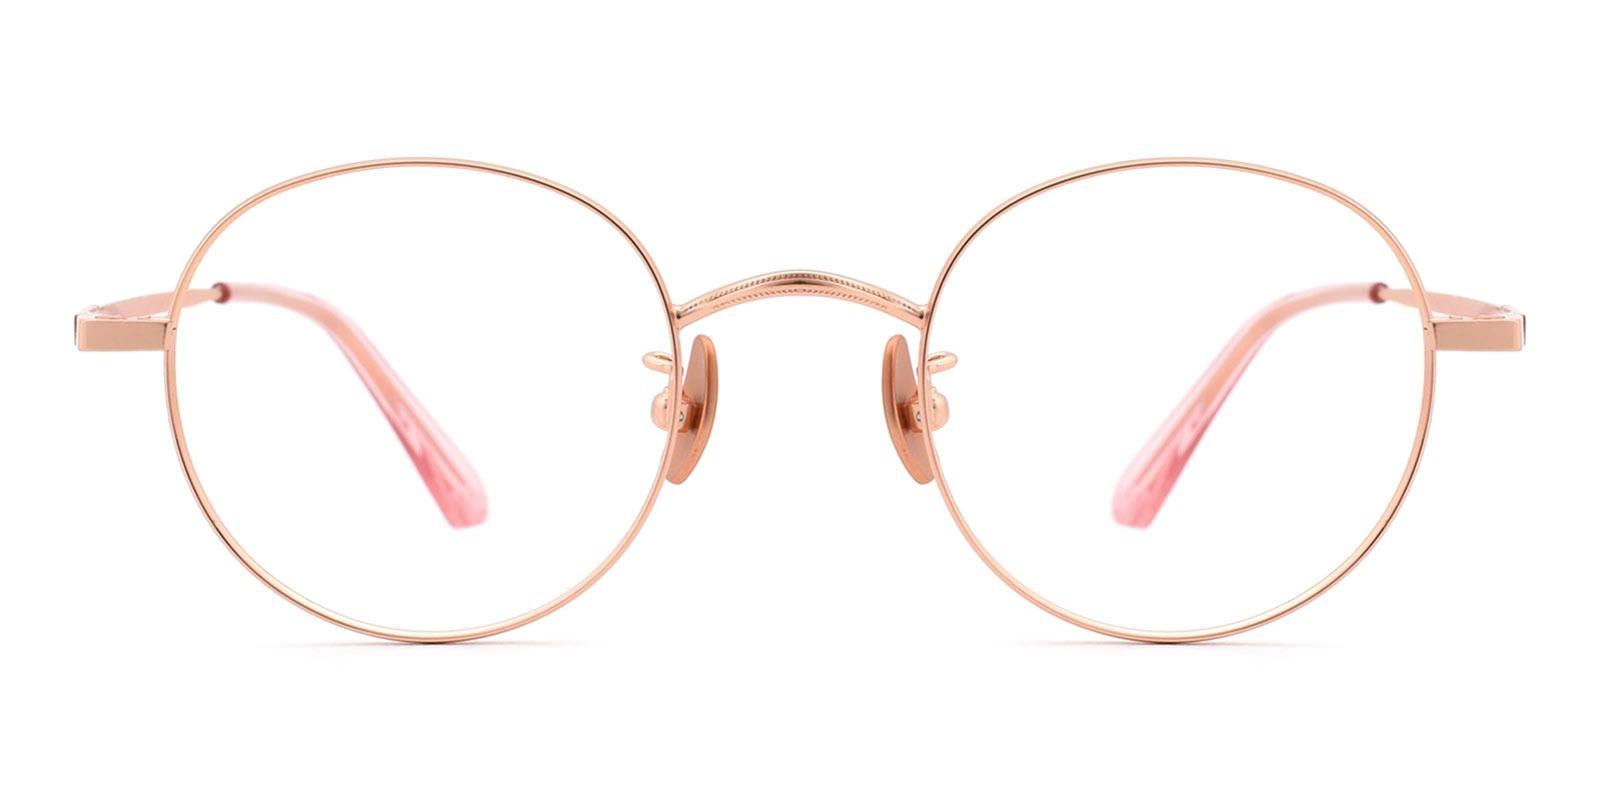 Phobon Gold Titanium Eyeglasses , NosePads Frames from ABBE Glasses